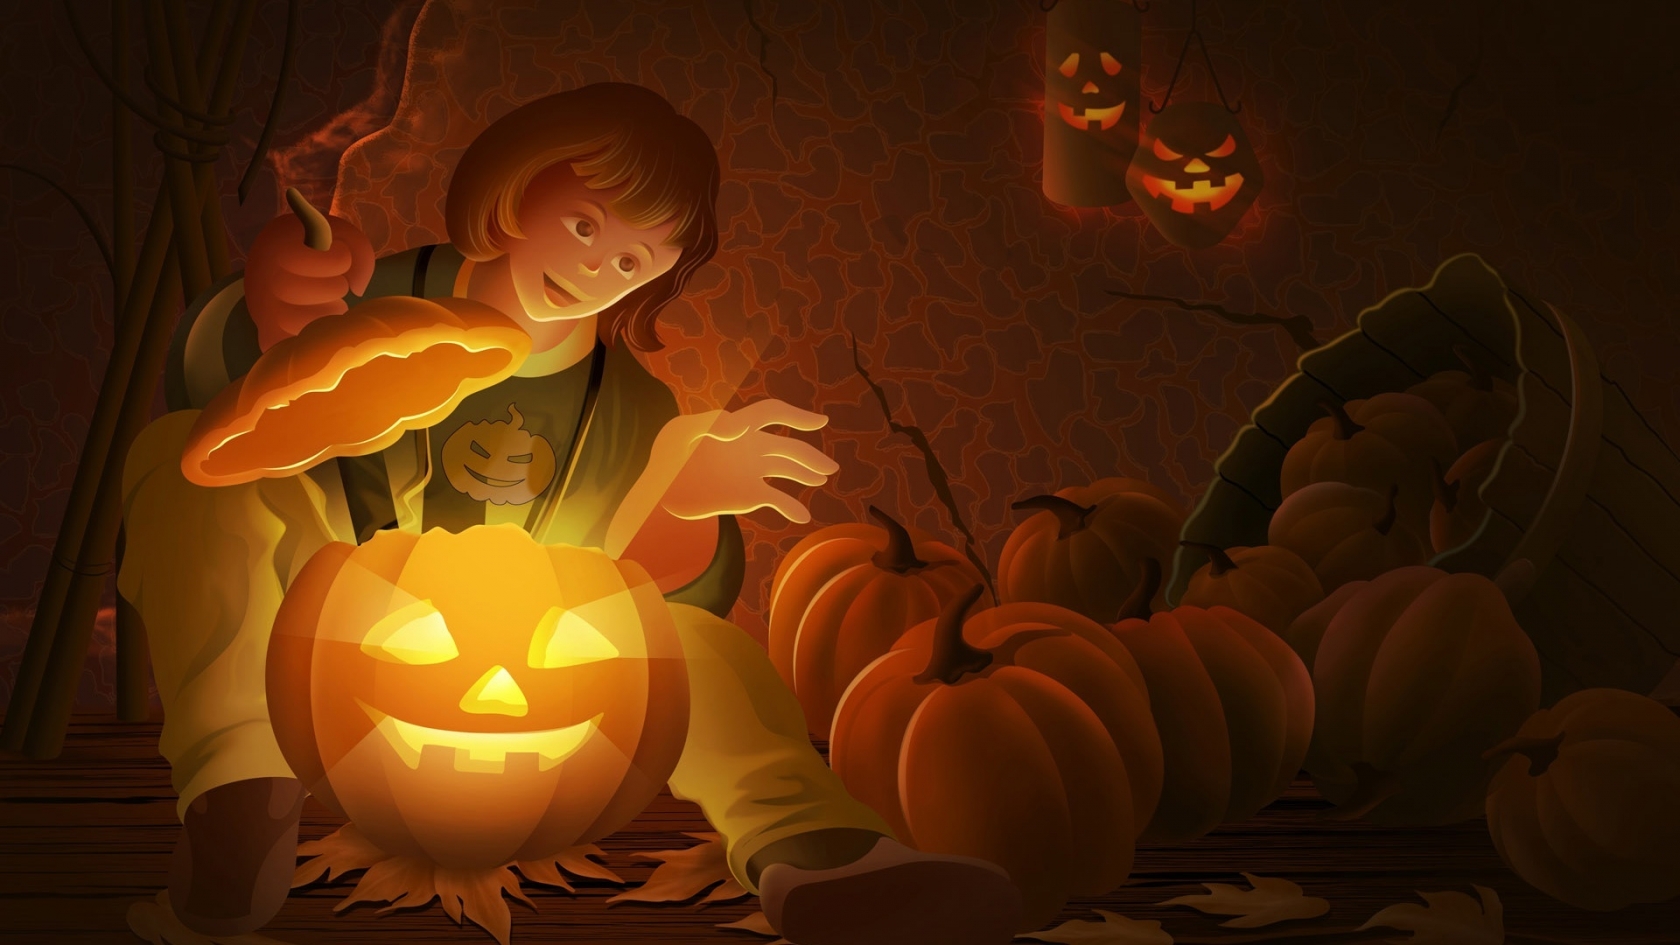 Cool Halloween Pumpkin for 1680 x 945 HDTV resolution